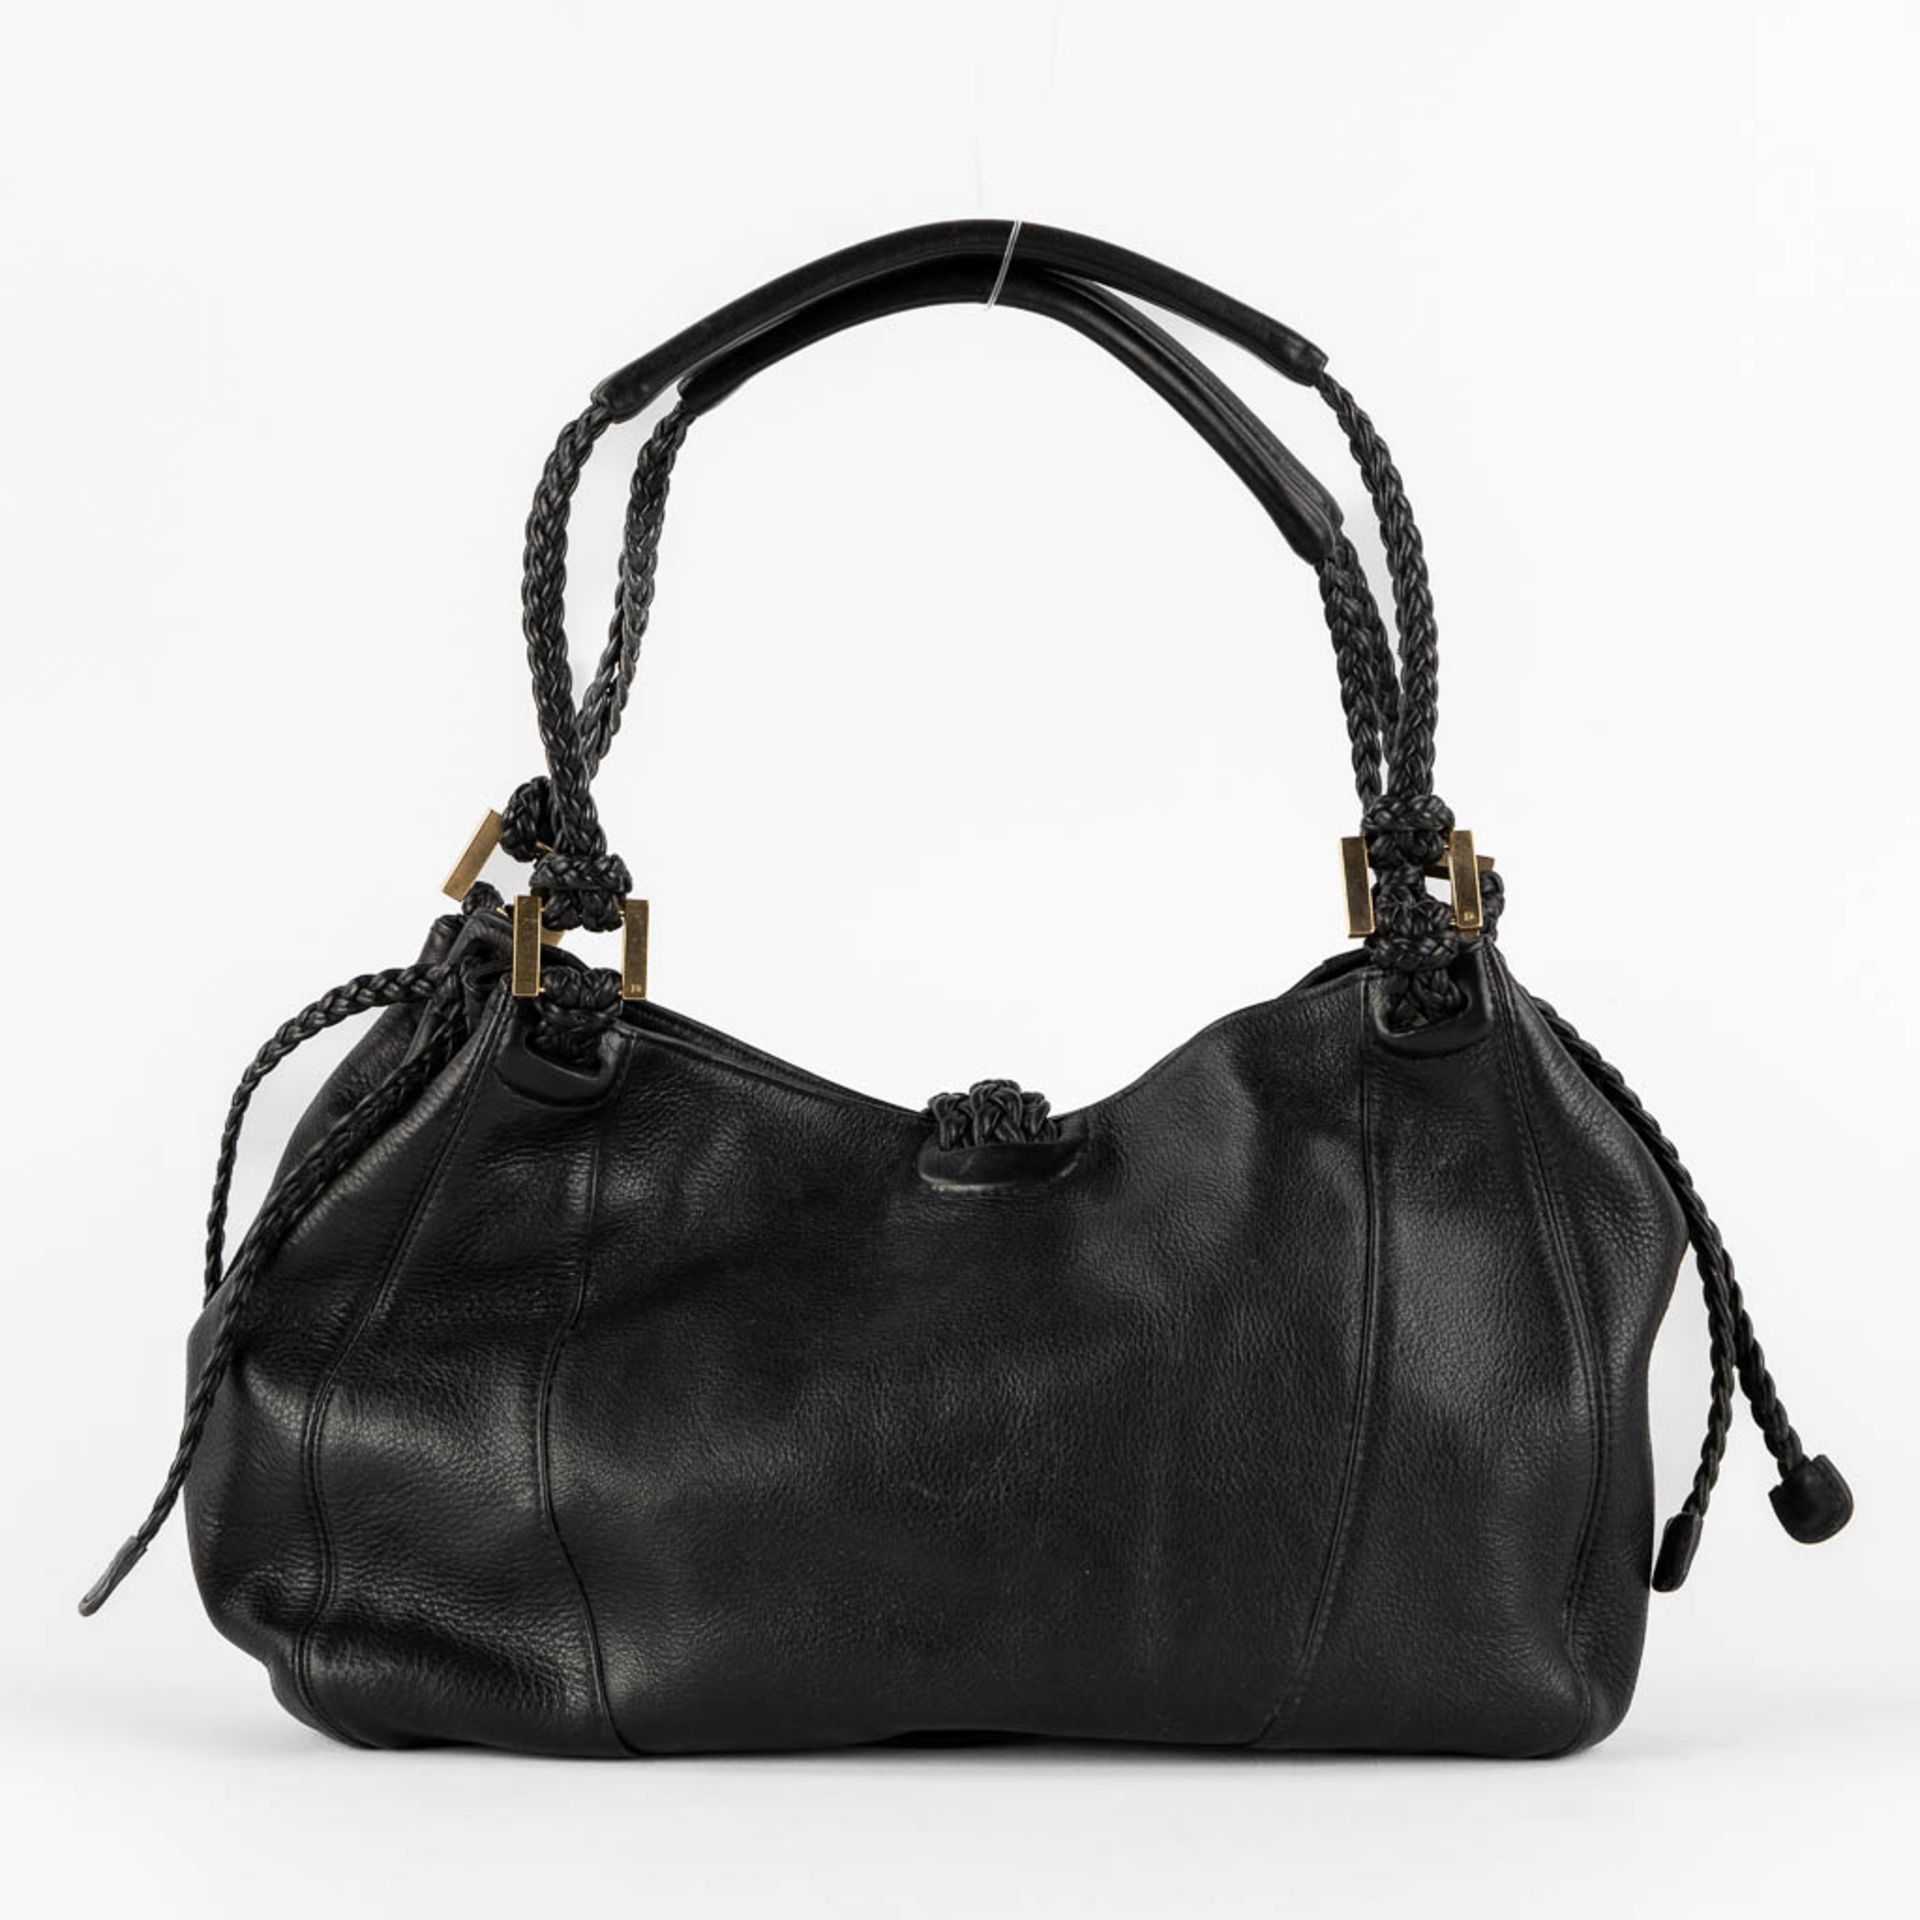 Delvaux Eugène PM, a black leather handbag. (W:38 x H:26 cm) - Image 6 of 19